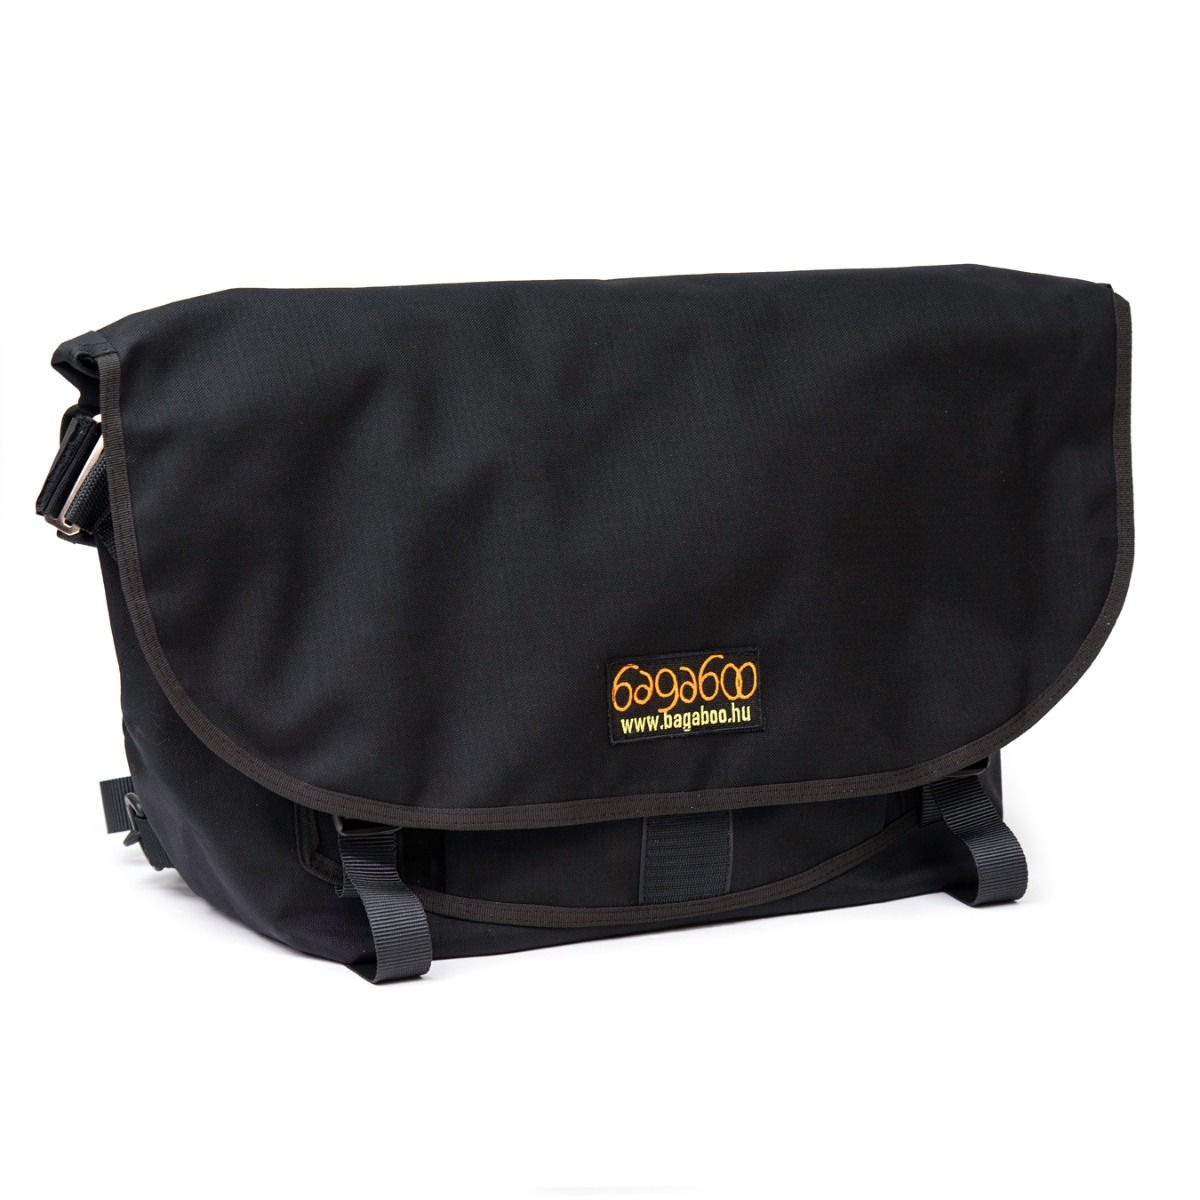 ホーム *BAGABOO* standard messenger bag (black)